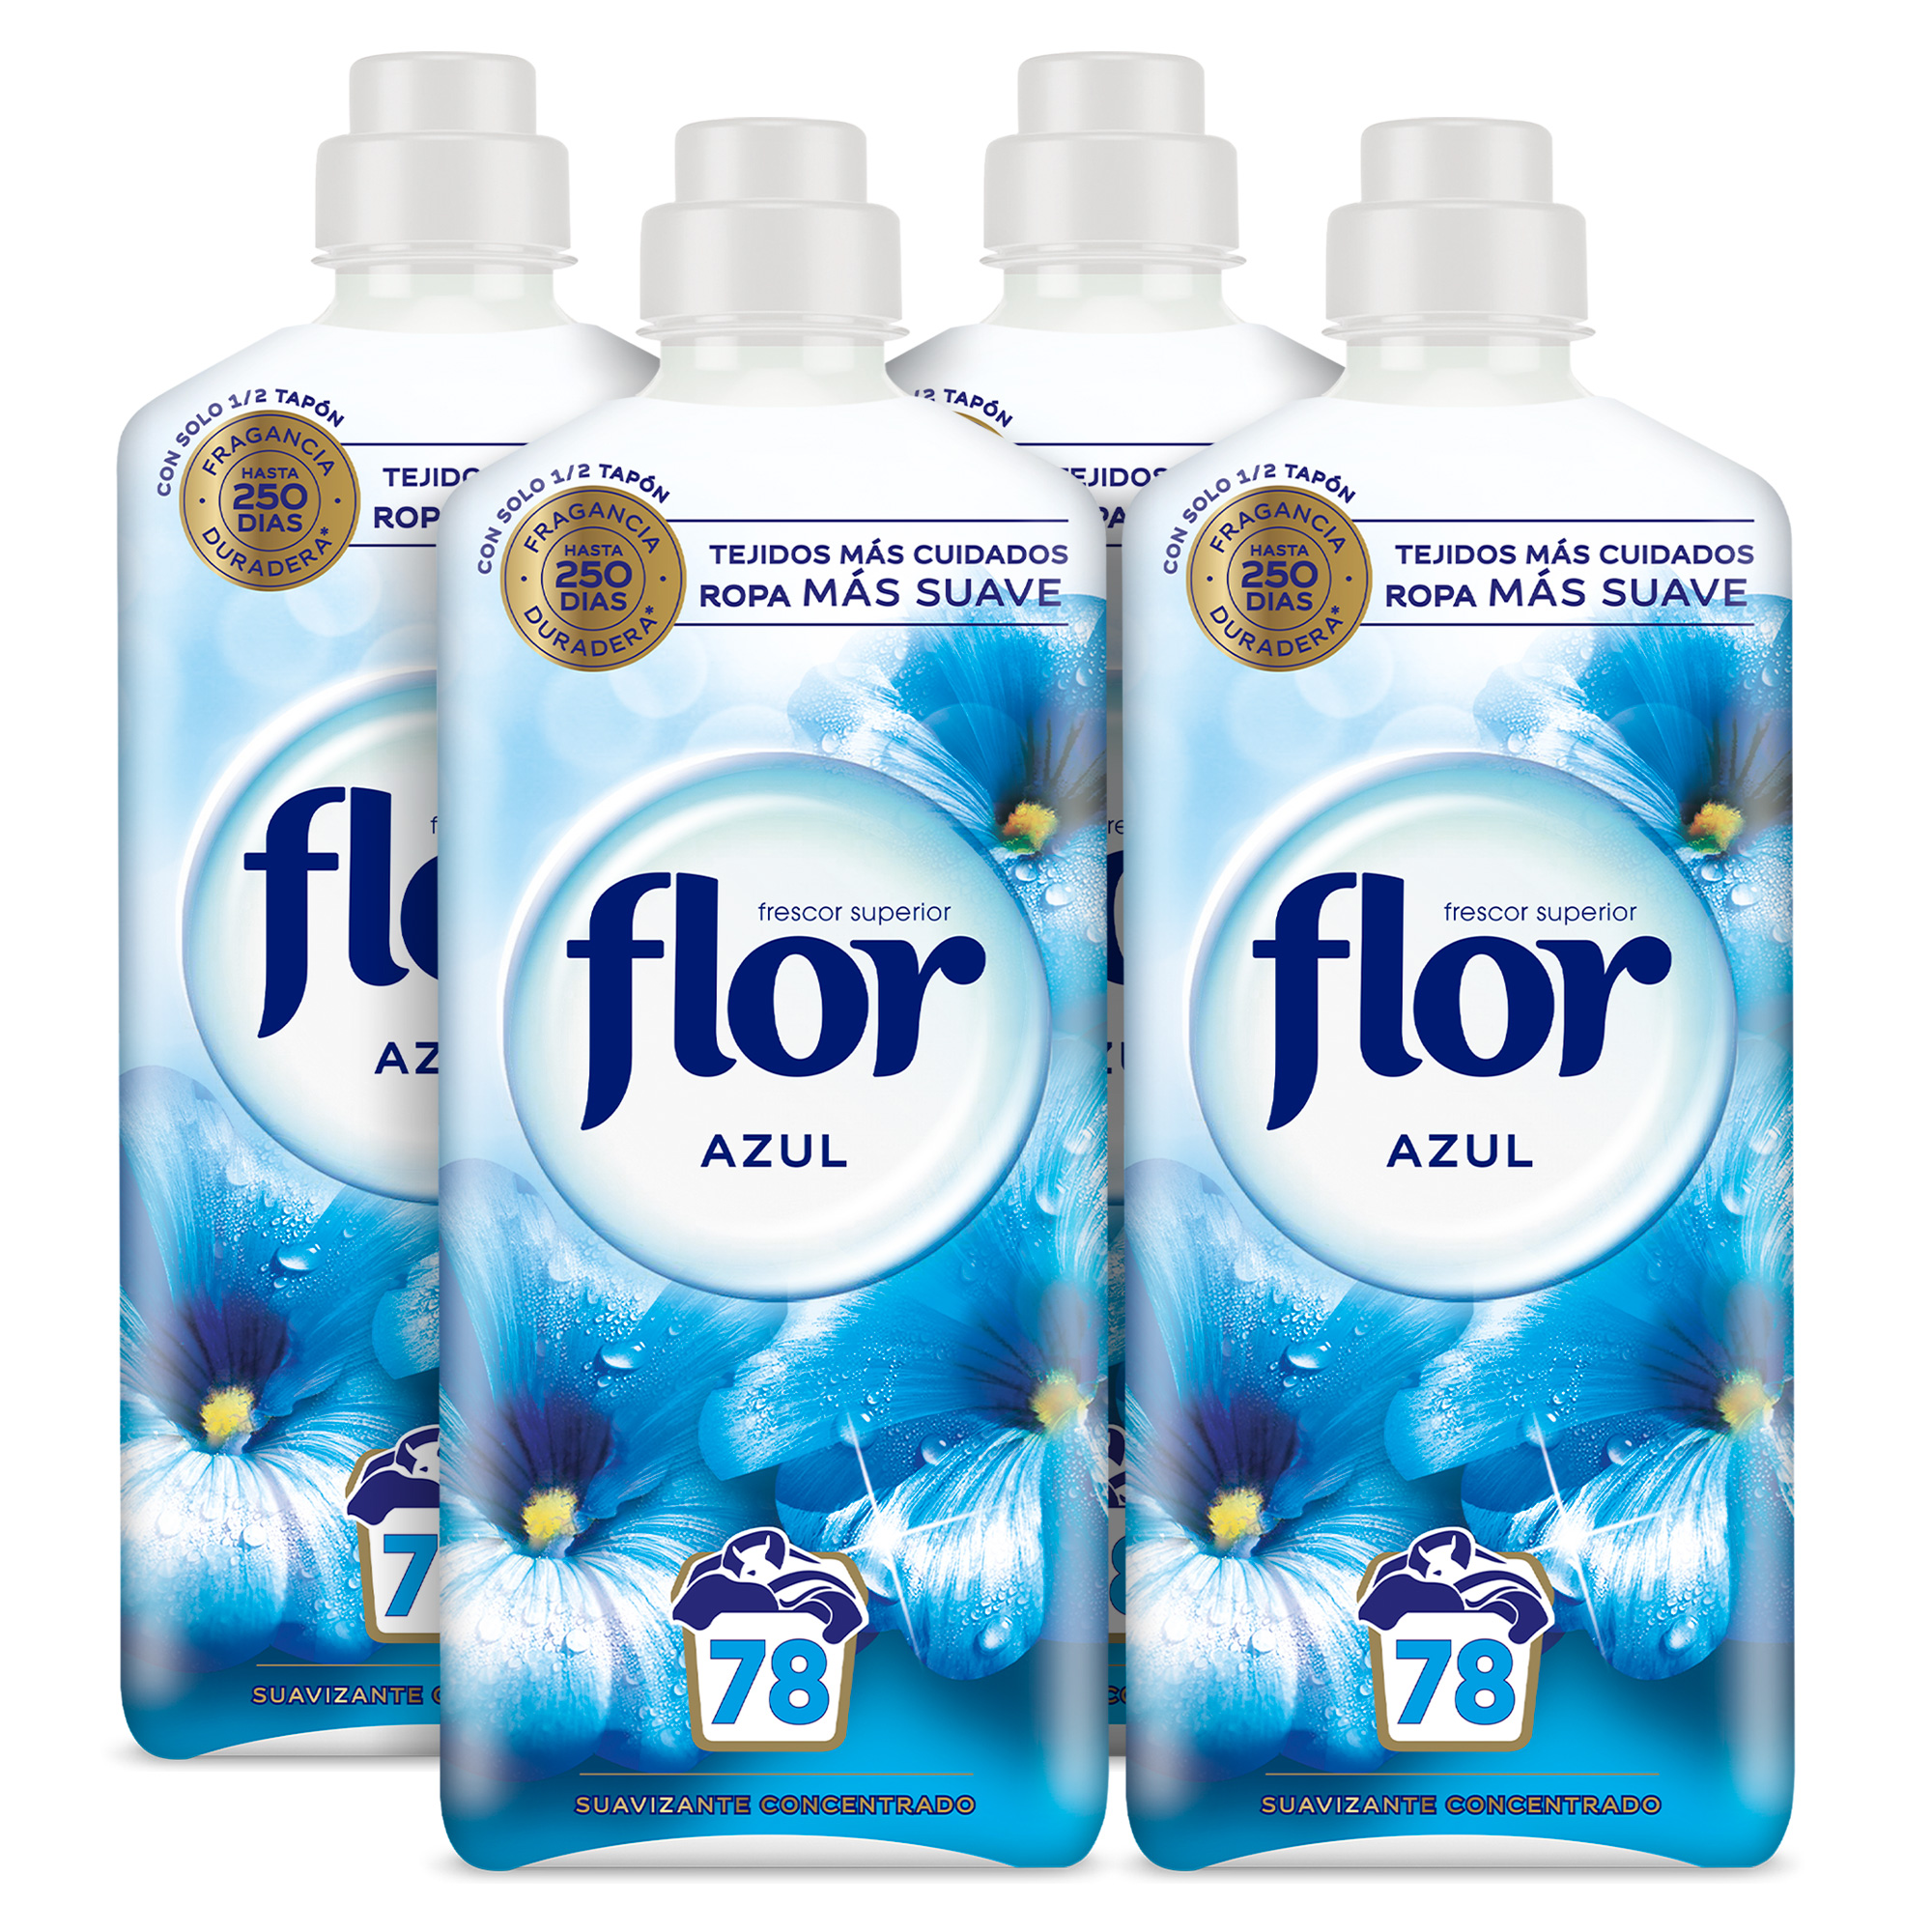 Flor - Flor Azul Suavizante Concentrado para la ropa 312 lavados (4 botellas de 78 lavados)